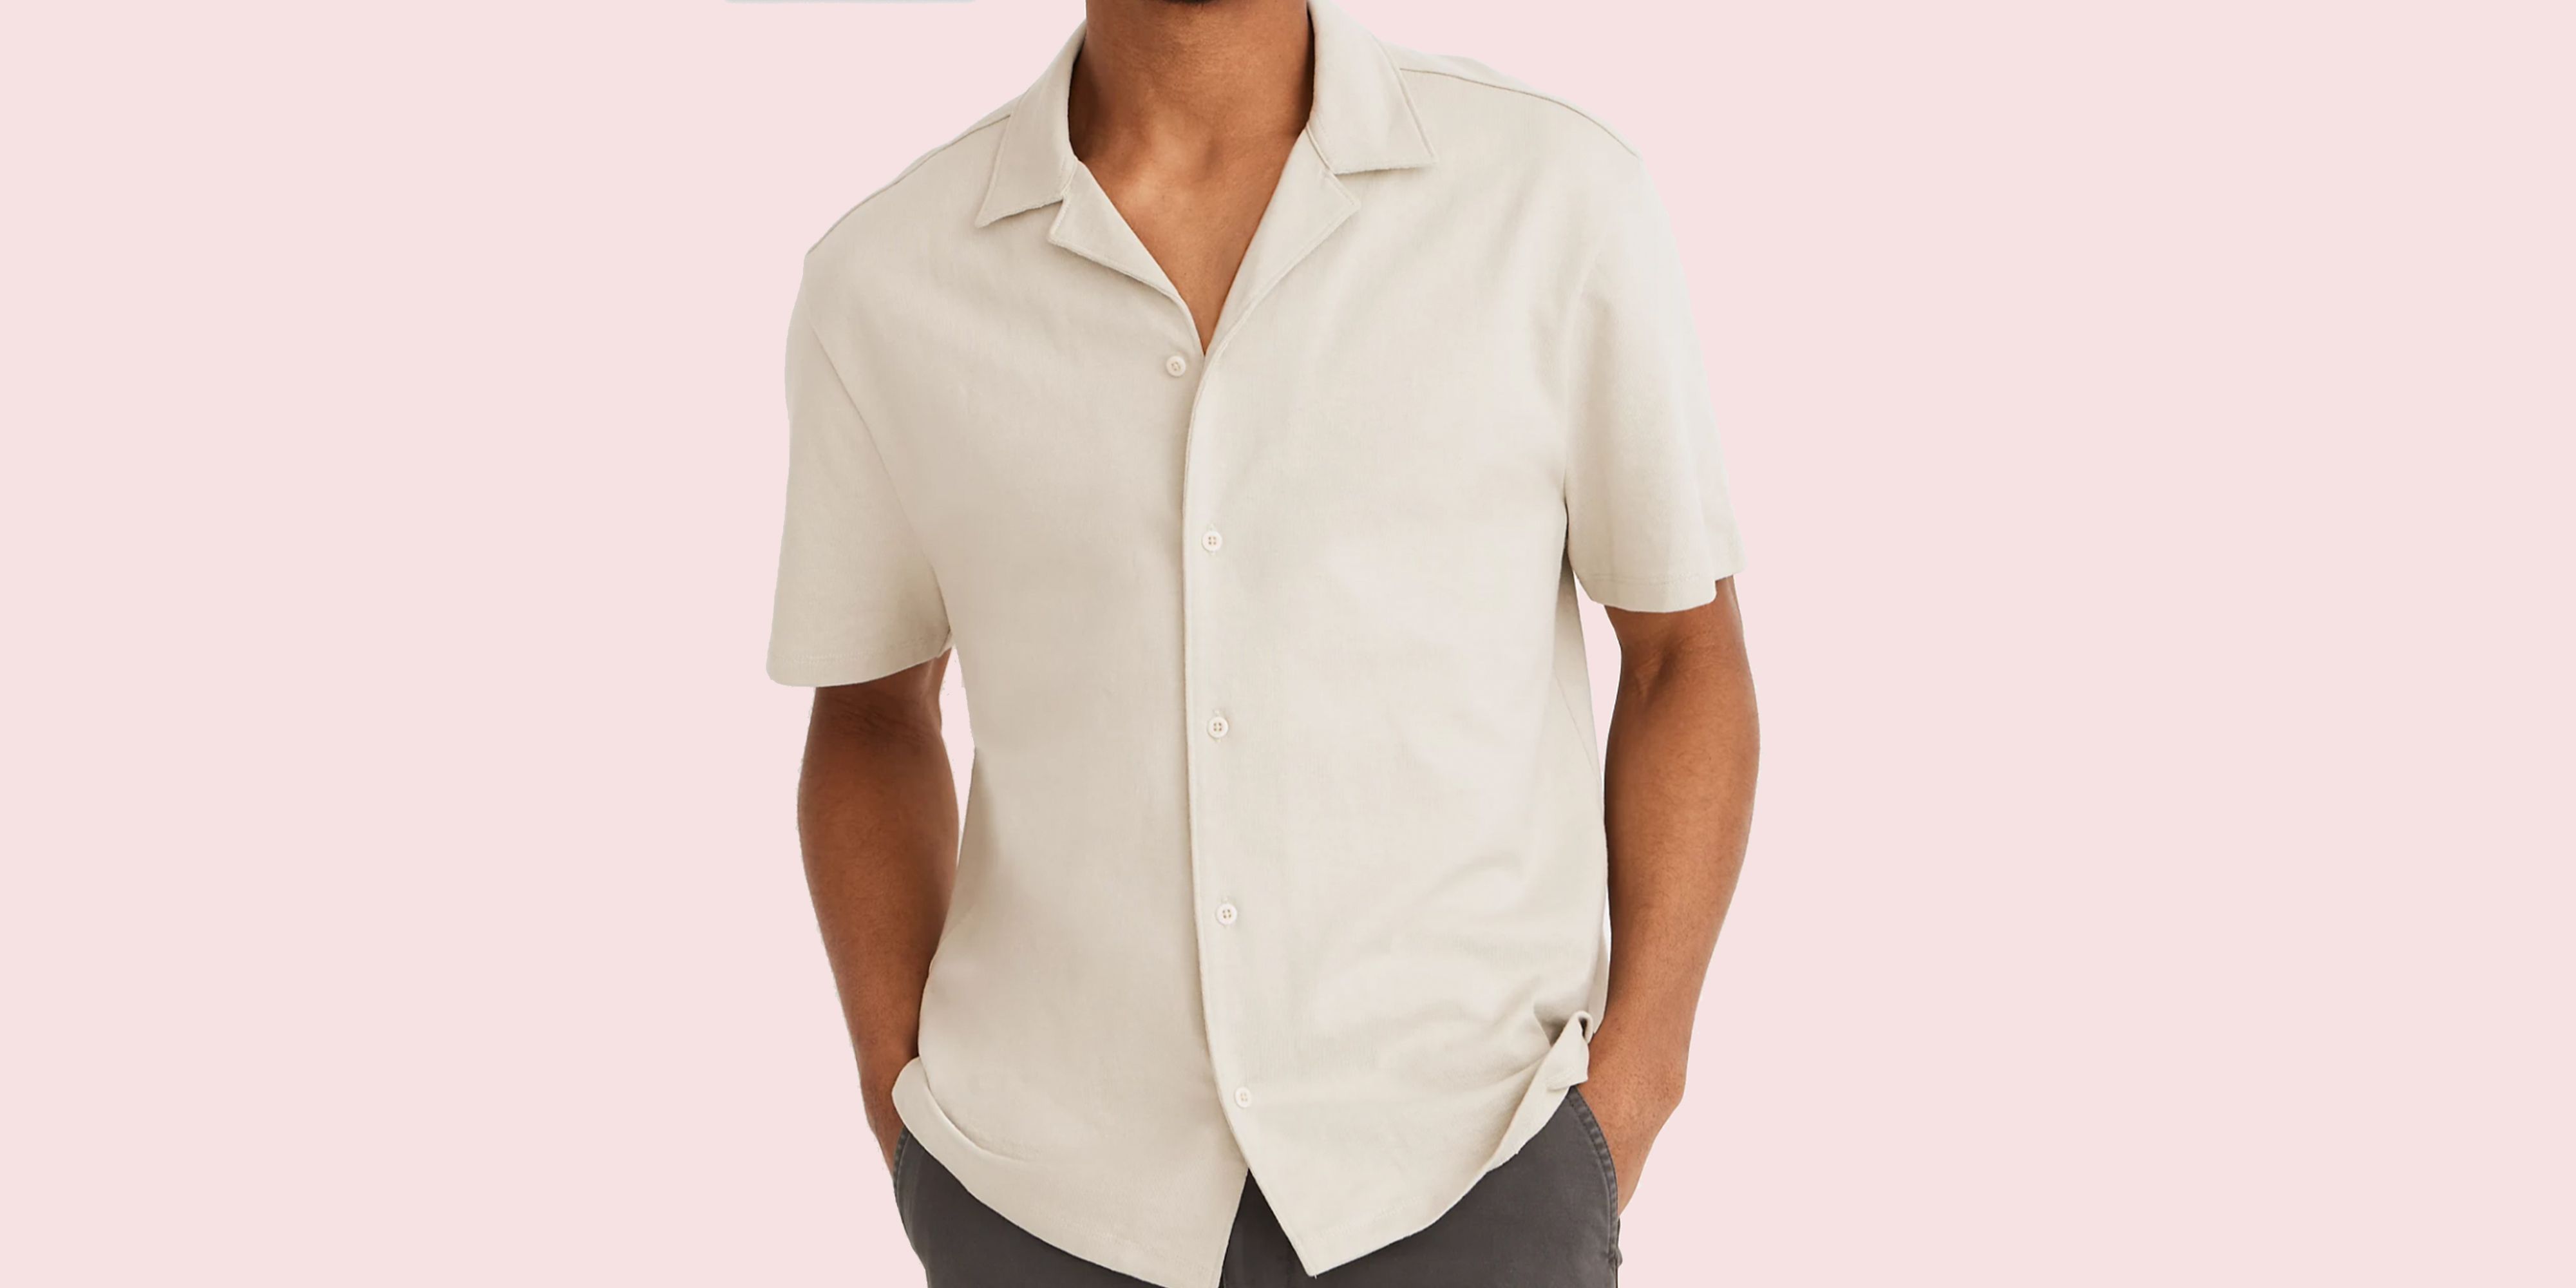 Regular Fit Long Sleeve Floral Shirt Bloomingdales Men Clothing Shirts Long sleeved Shirts 